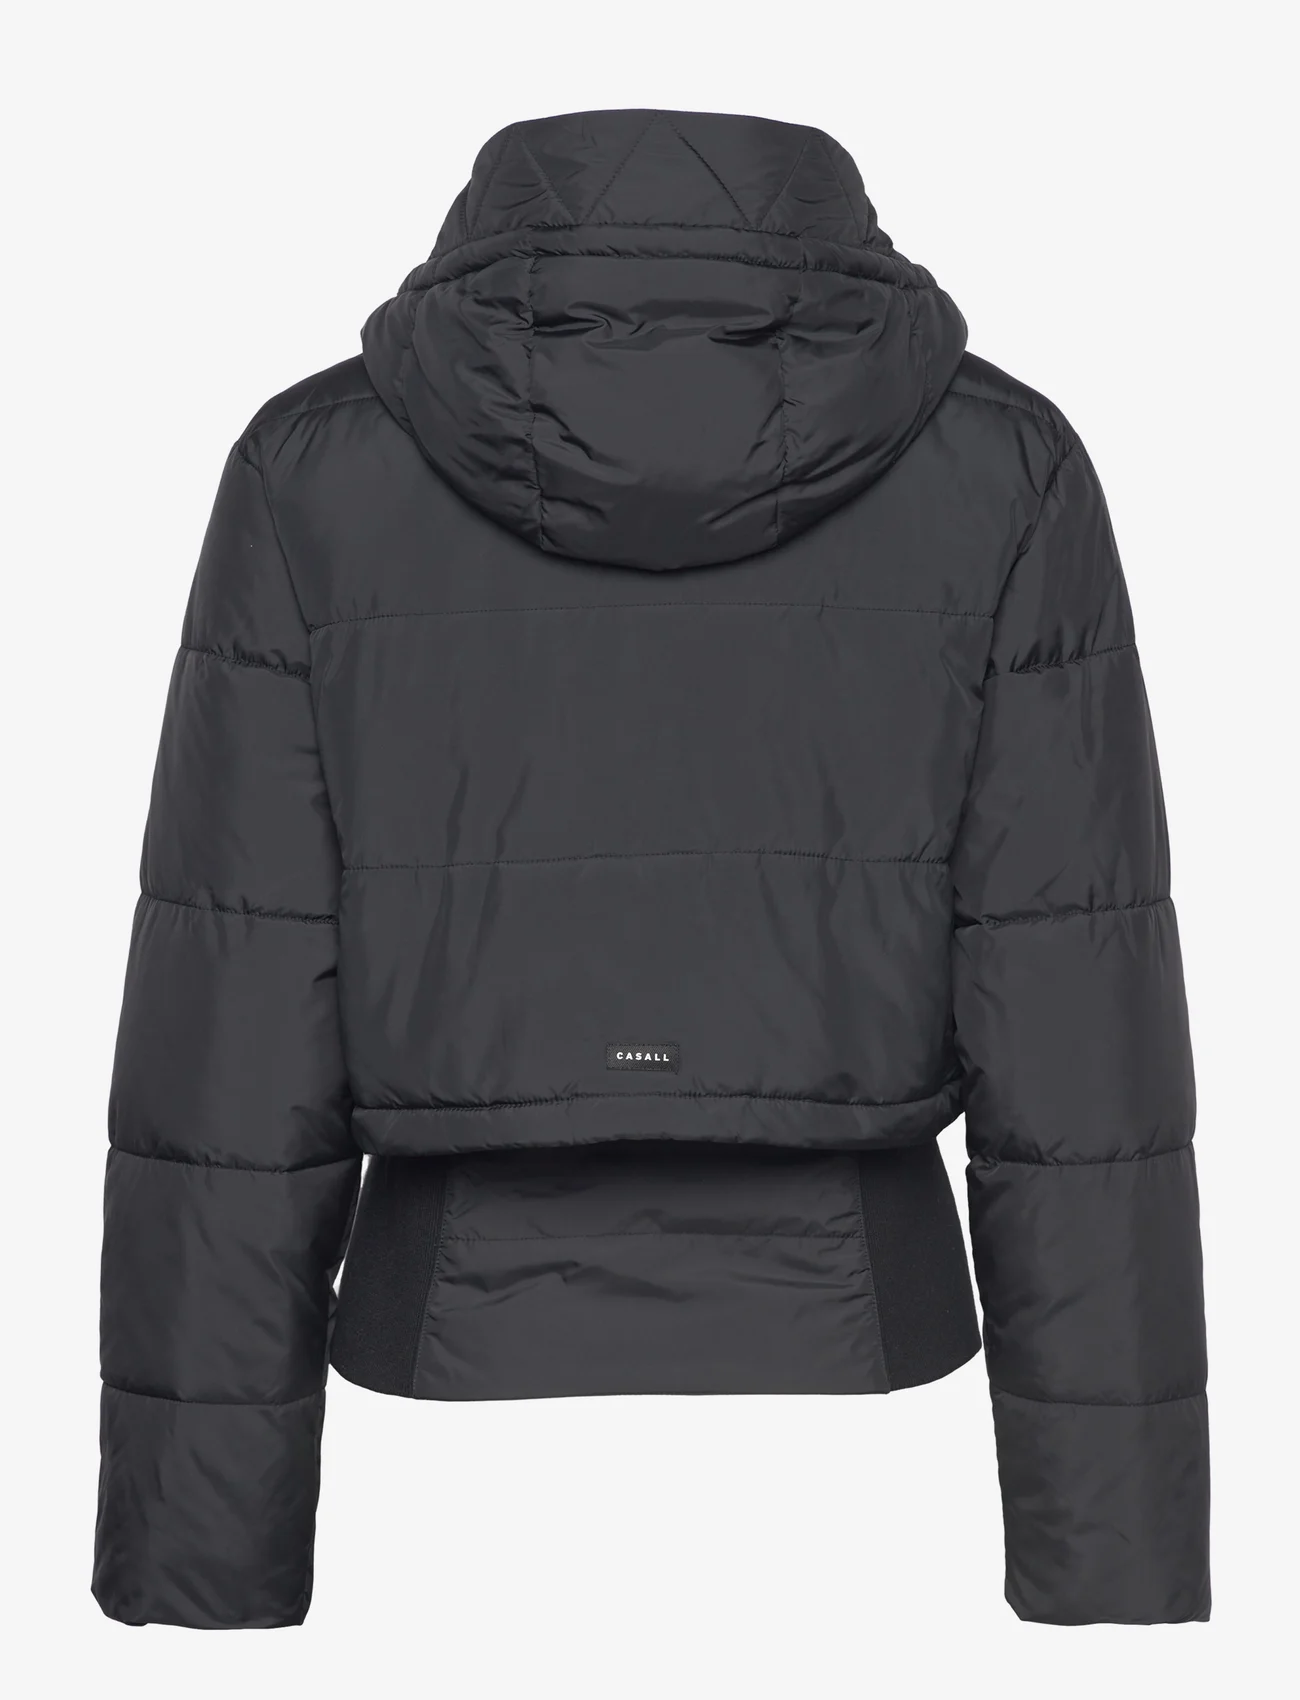 Casall - Urban Padded Jacket - black - 1